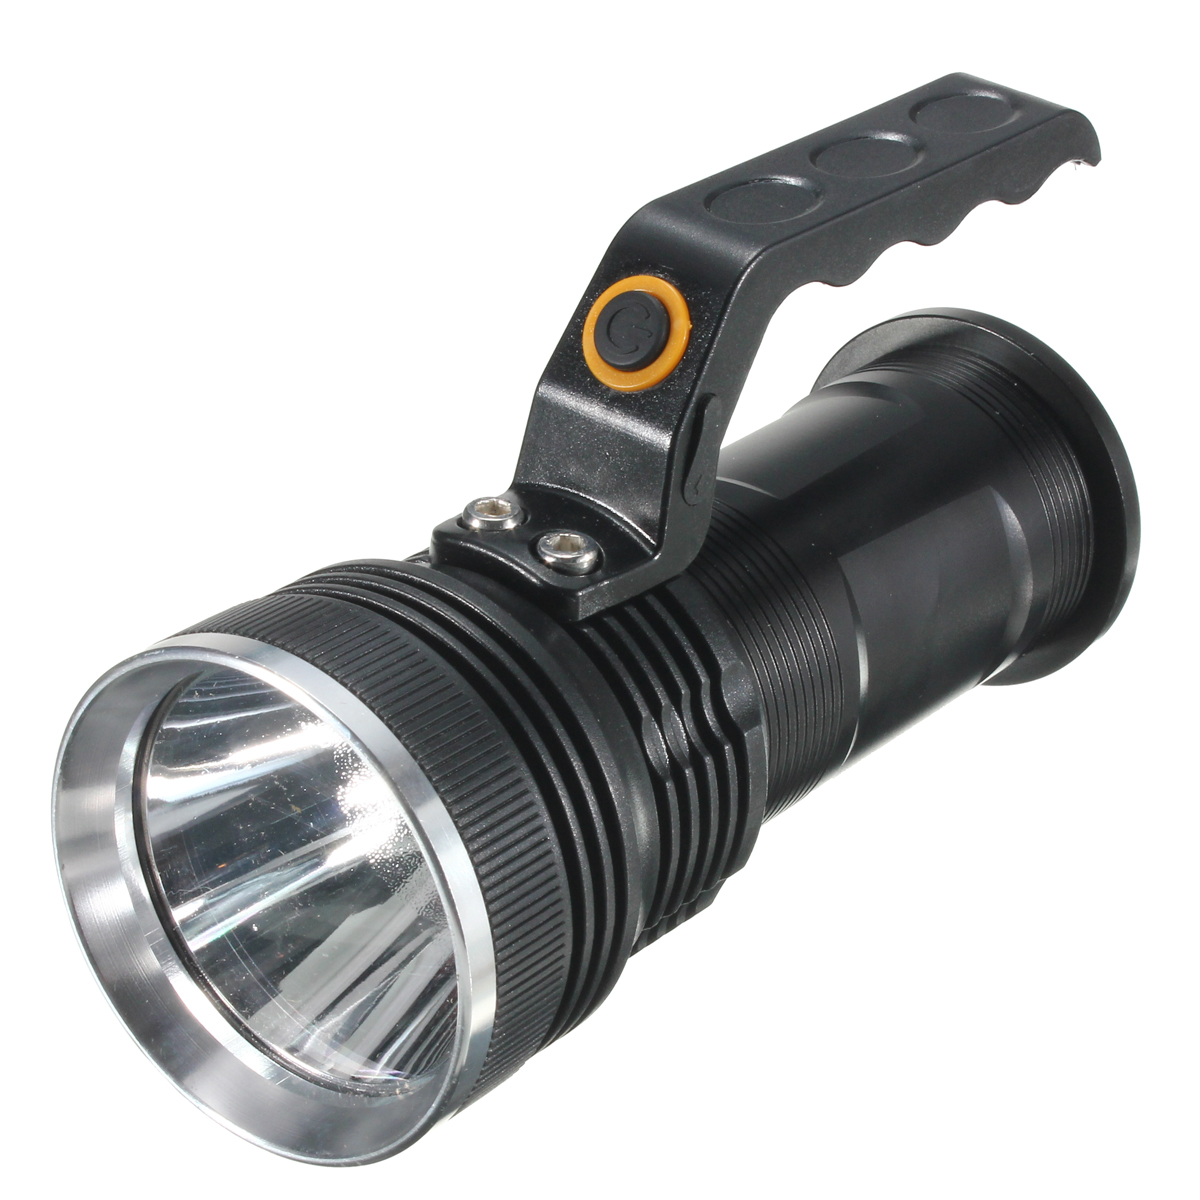 

Универсальная аккумуляторная батарея 3000LM Tactical Brightness LED Фонарик-факел Handheld Лампа